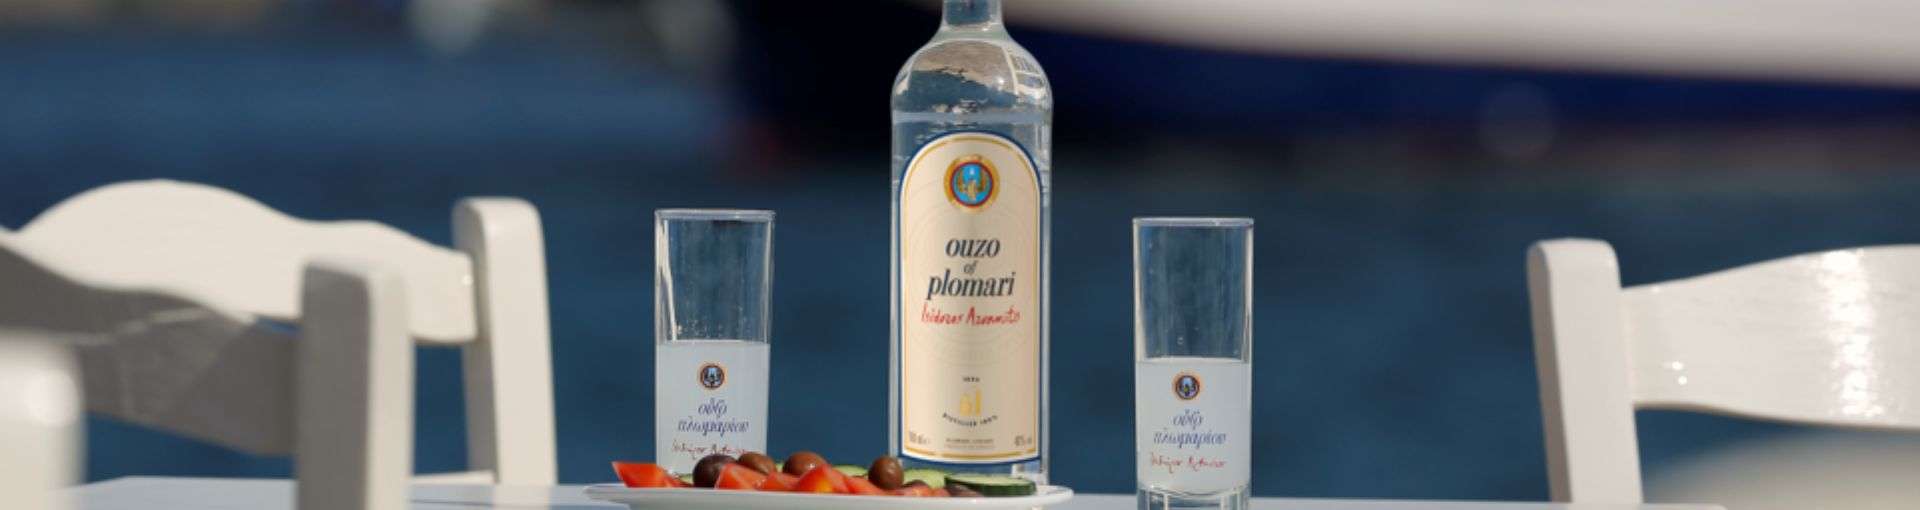 Ouzo of Plomari Flasche in der Mitte des Bildes, links und rechts daneben ein Glas für Ouzo und davor ein Teller mit Tomate, Oliven und Gurkenscheiben, alles steht auf einem Tisch mit weißen Sesseln darum und im Hintergrund das Meer mit einem blauen Boot